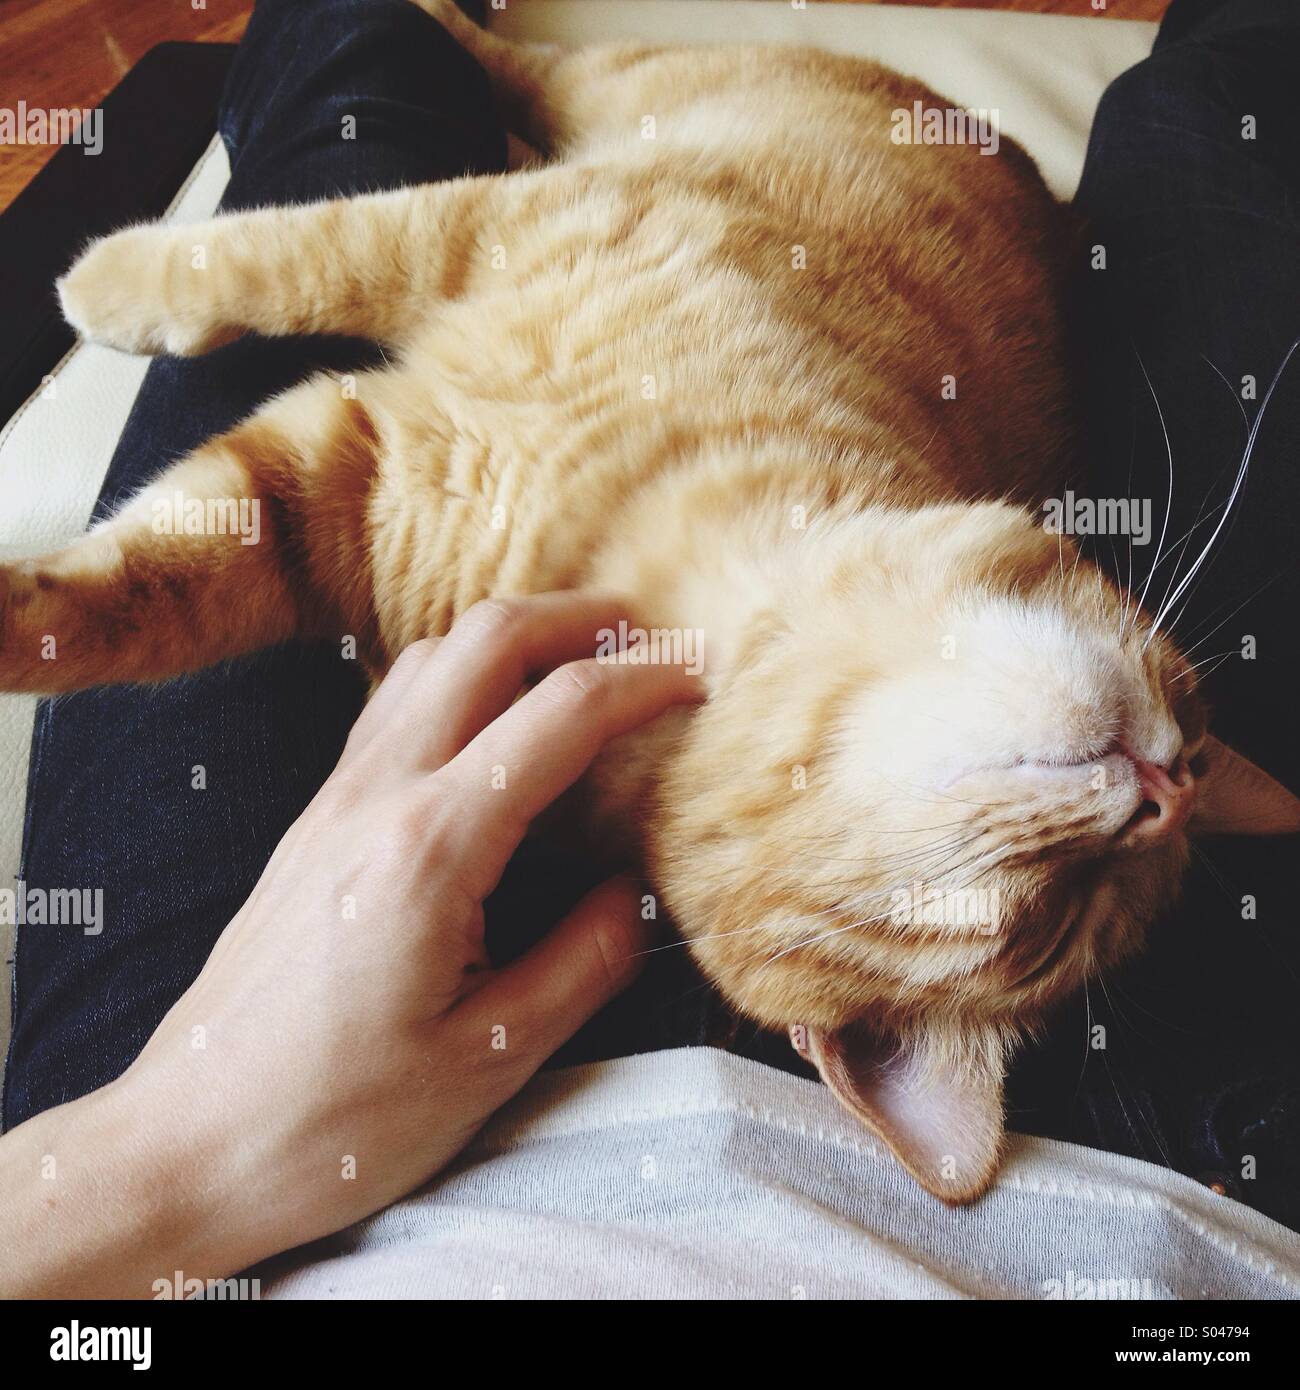 Happy cat sur les genoux d'une personne ayant son cou rayé. Banque D'Images